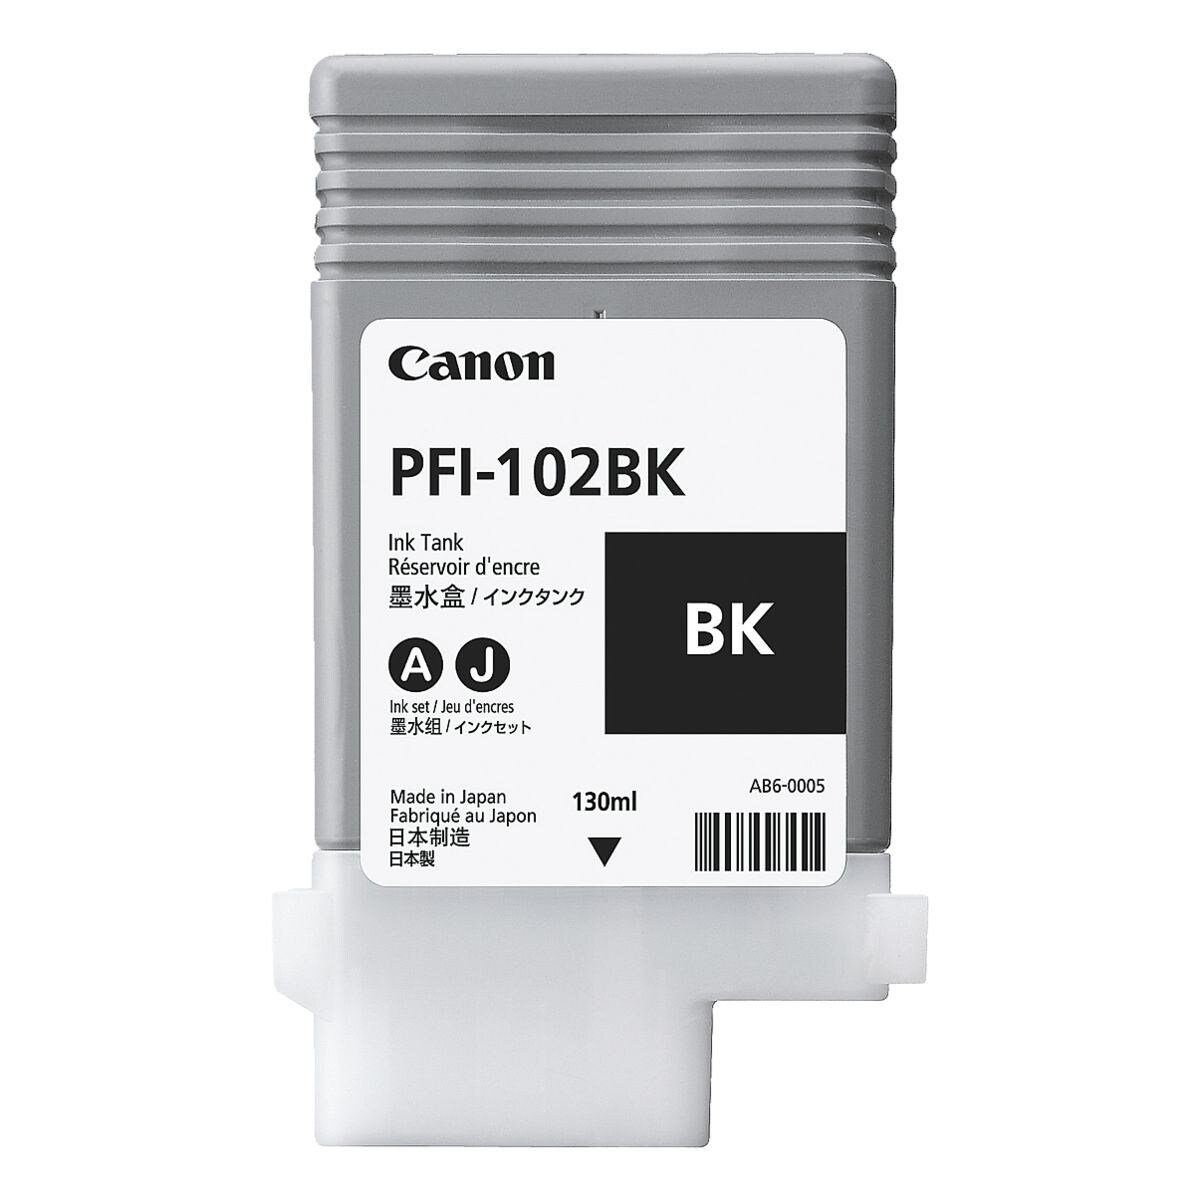 Canon PFI-102BK ml, Original Druckerpatrone, Tintenpatrone schwarz) (130